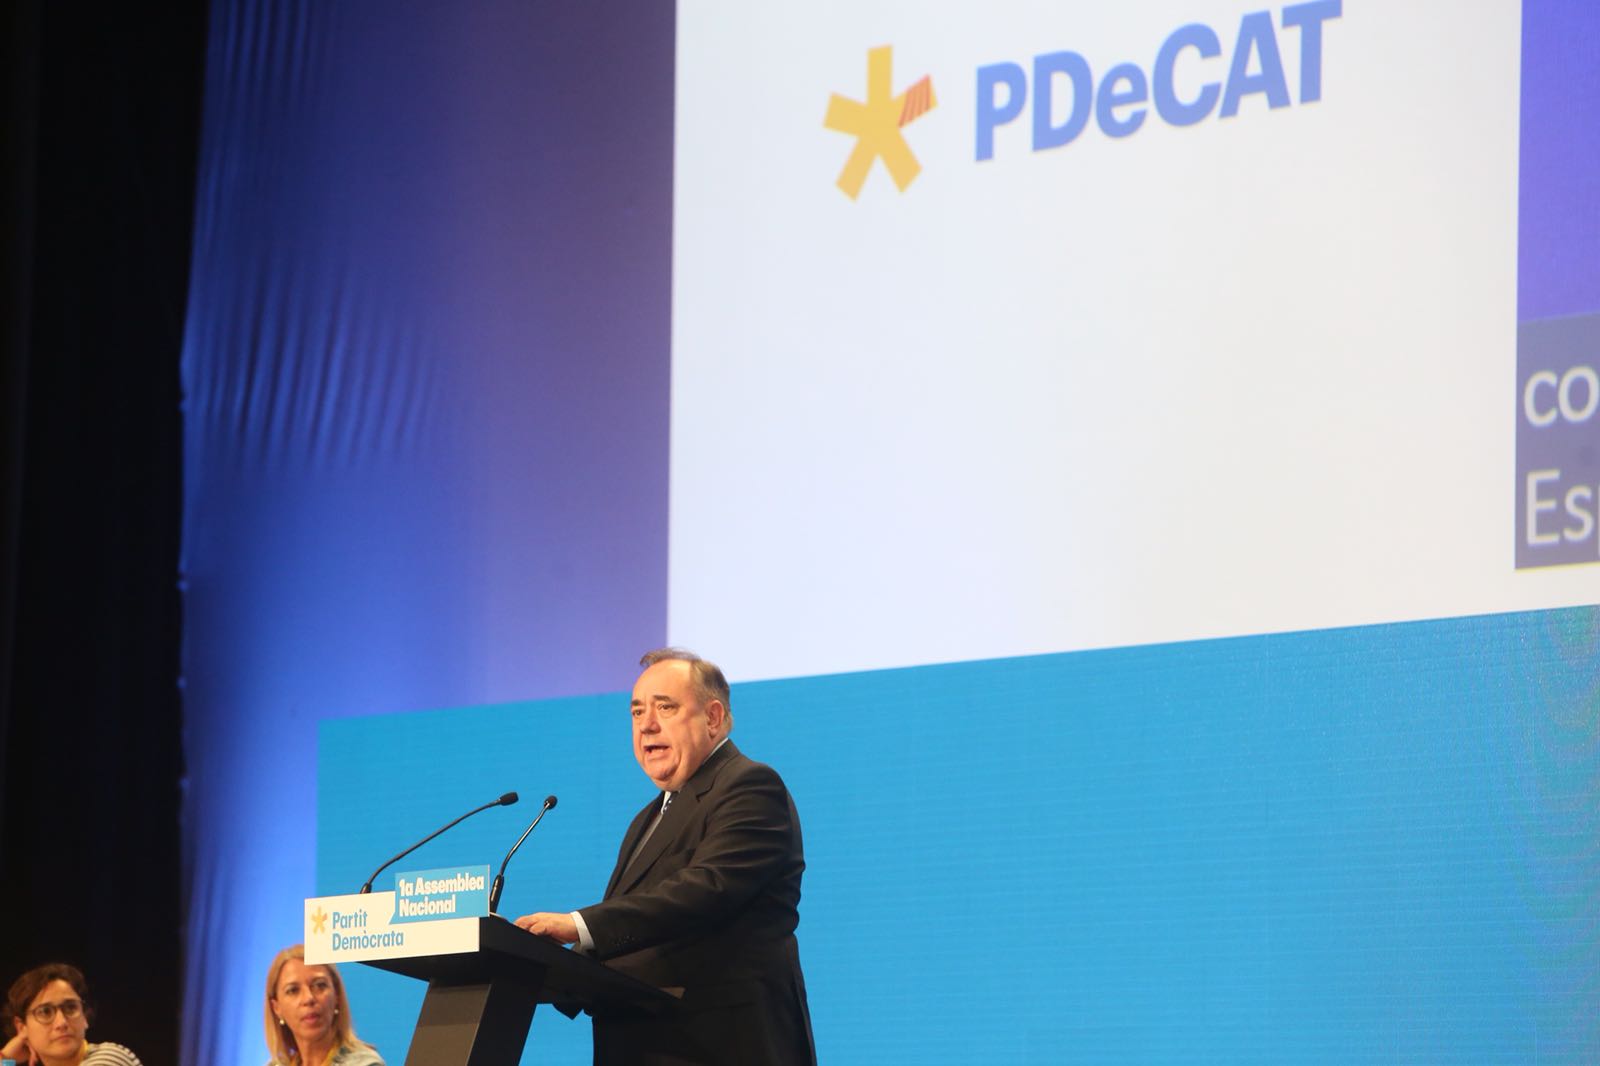 Salmond, a l'assemblea del PDeCAT: "El vostre somni de llibertat mai morirà"